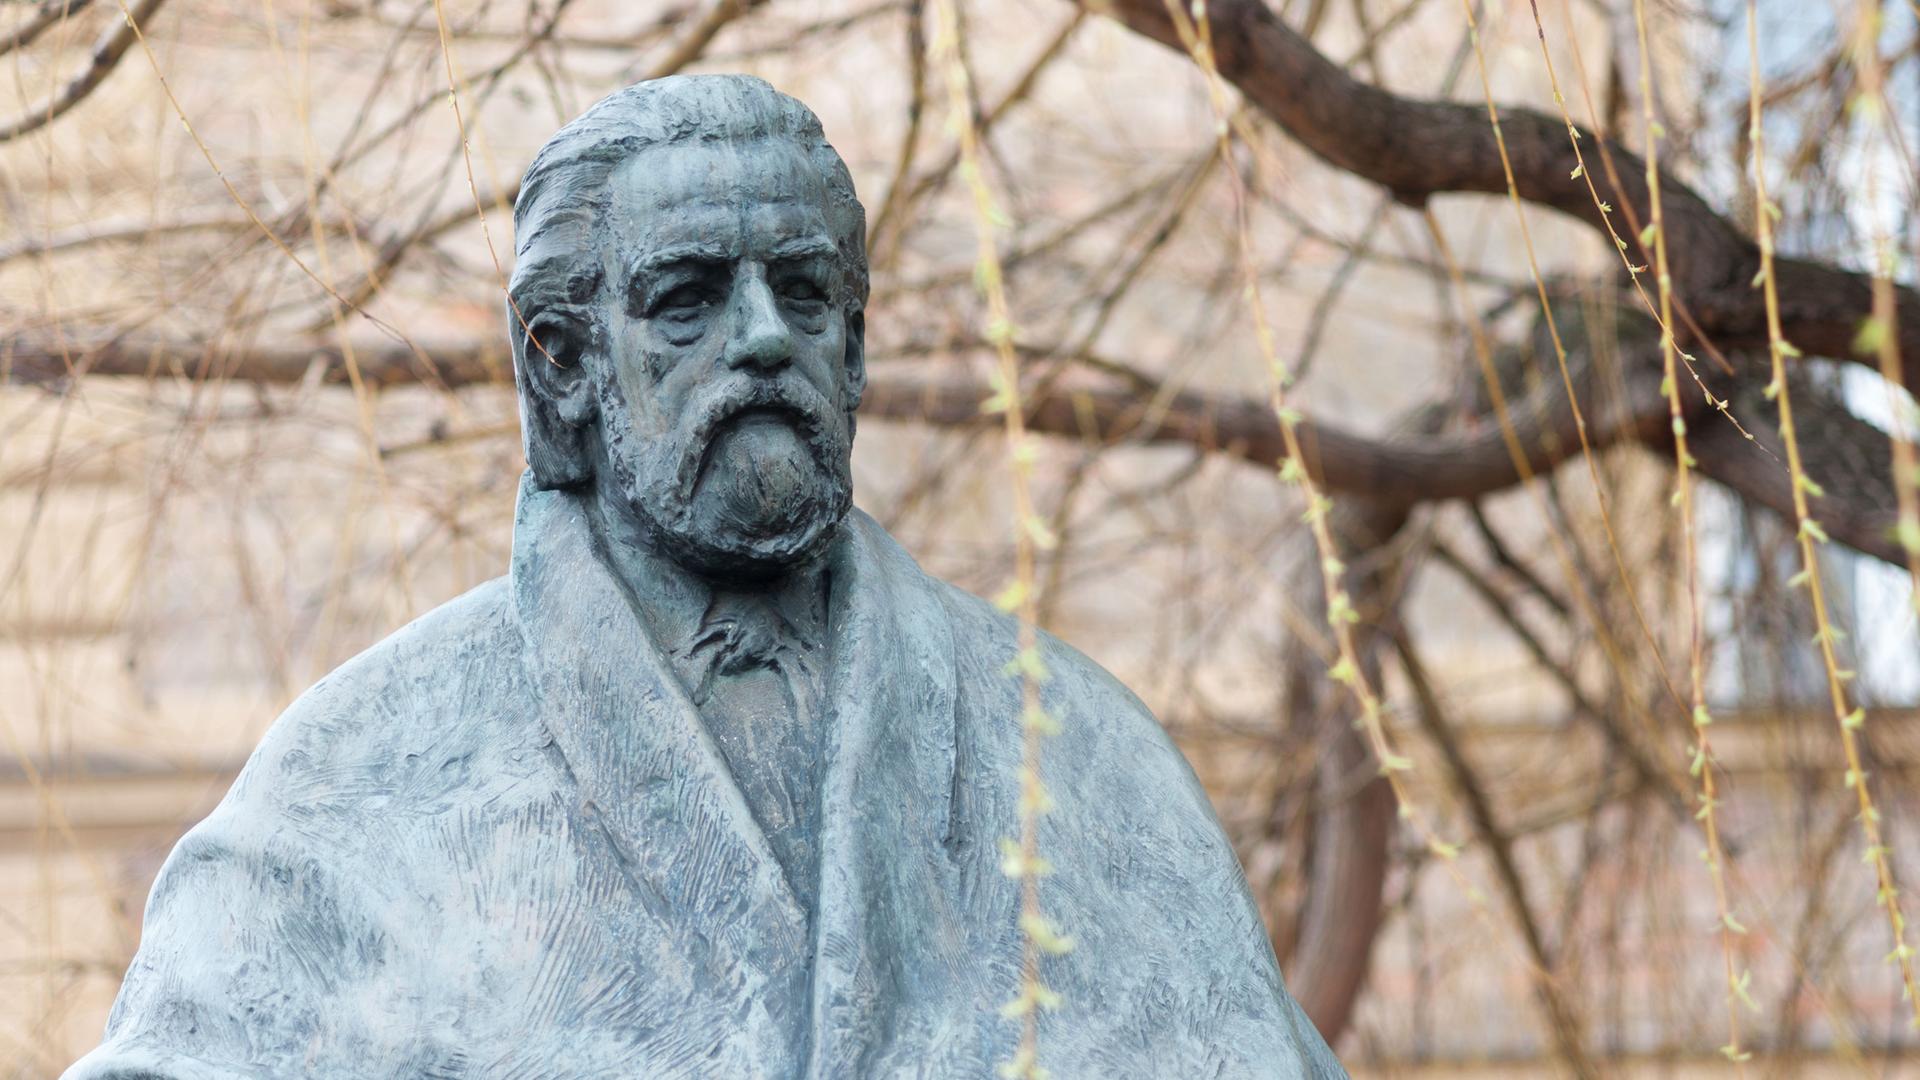 Eine Statue am Ufer der Moldau in Prag erinnert an den tschechischen Komponisten Bedrich (Friedrich) Smetana. Er wurde am 02. März 1824 geboren und lebte viele Jahre in Prag